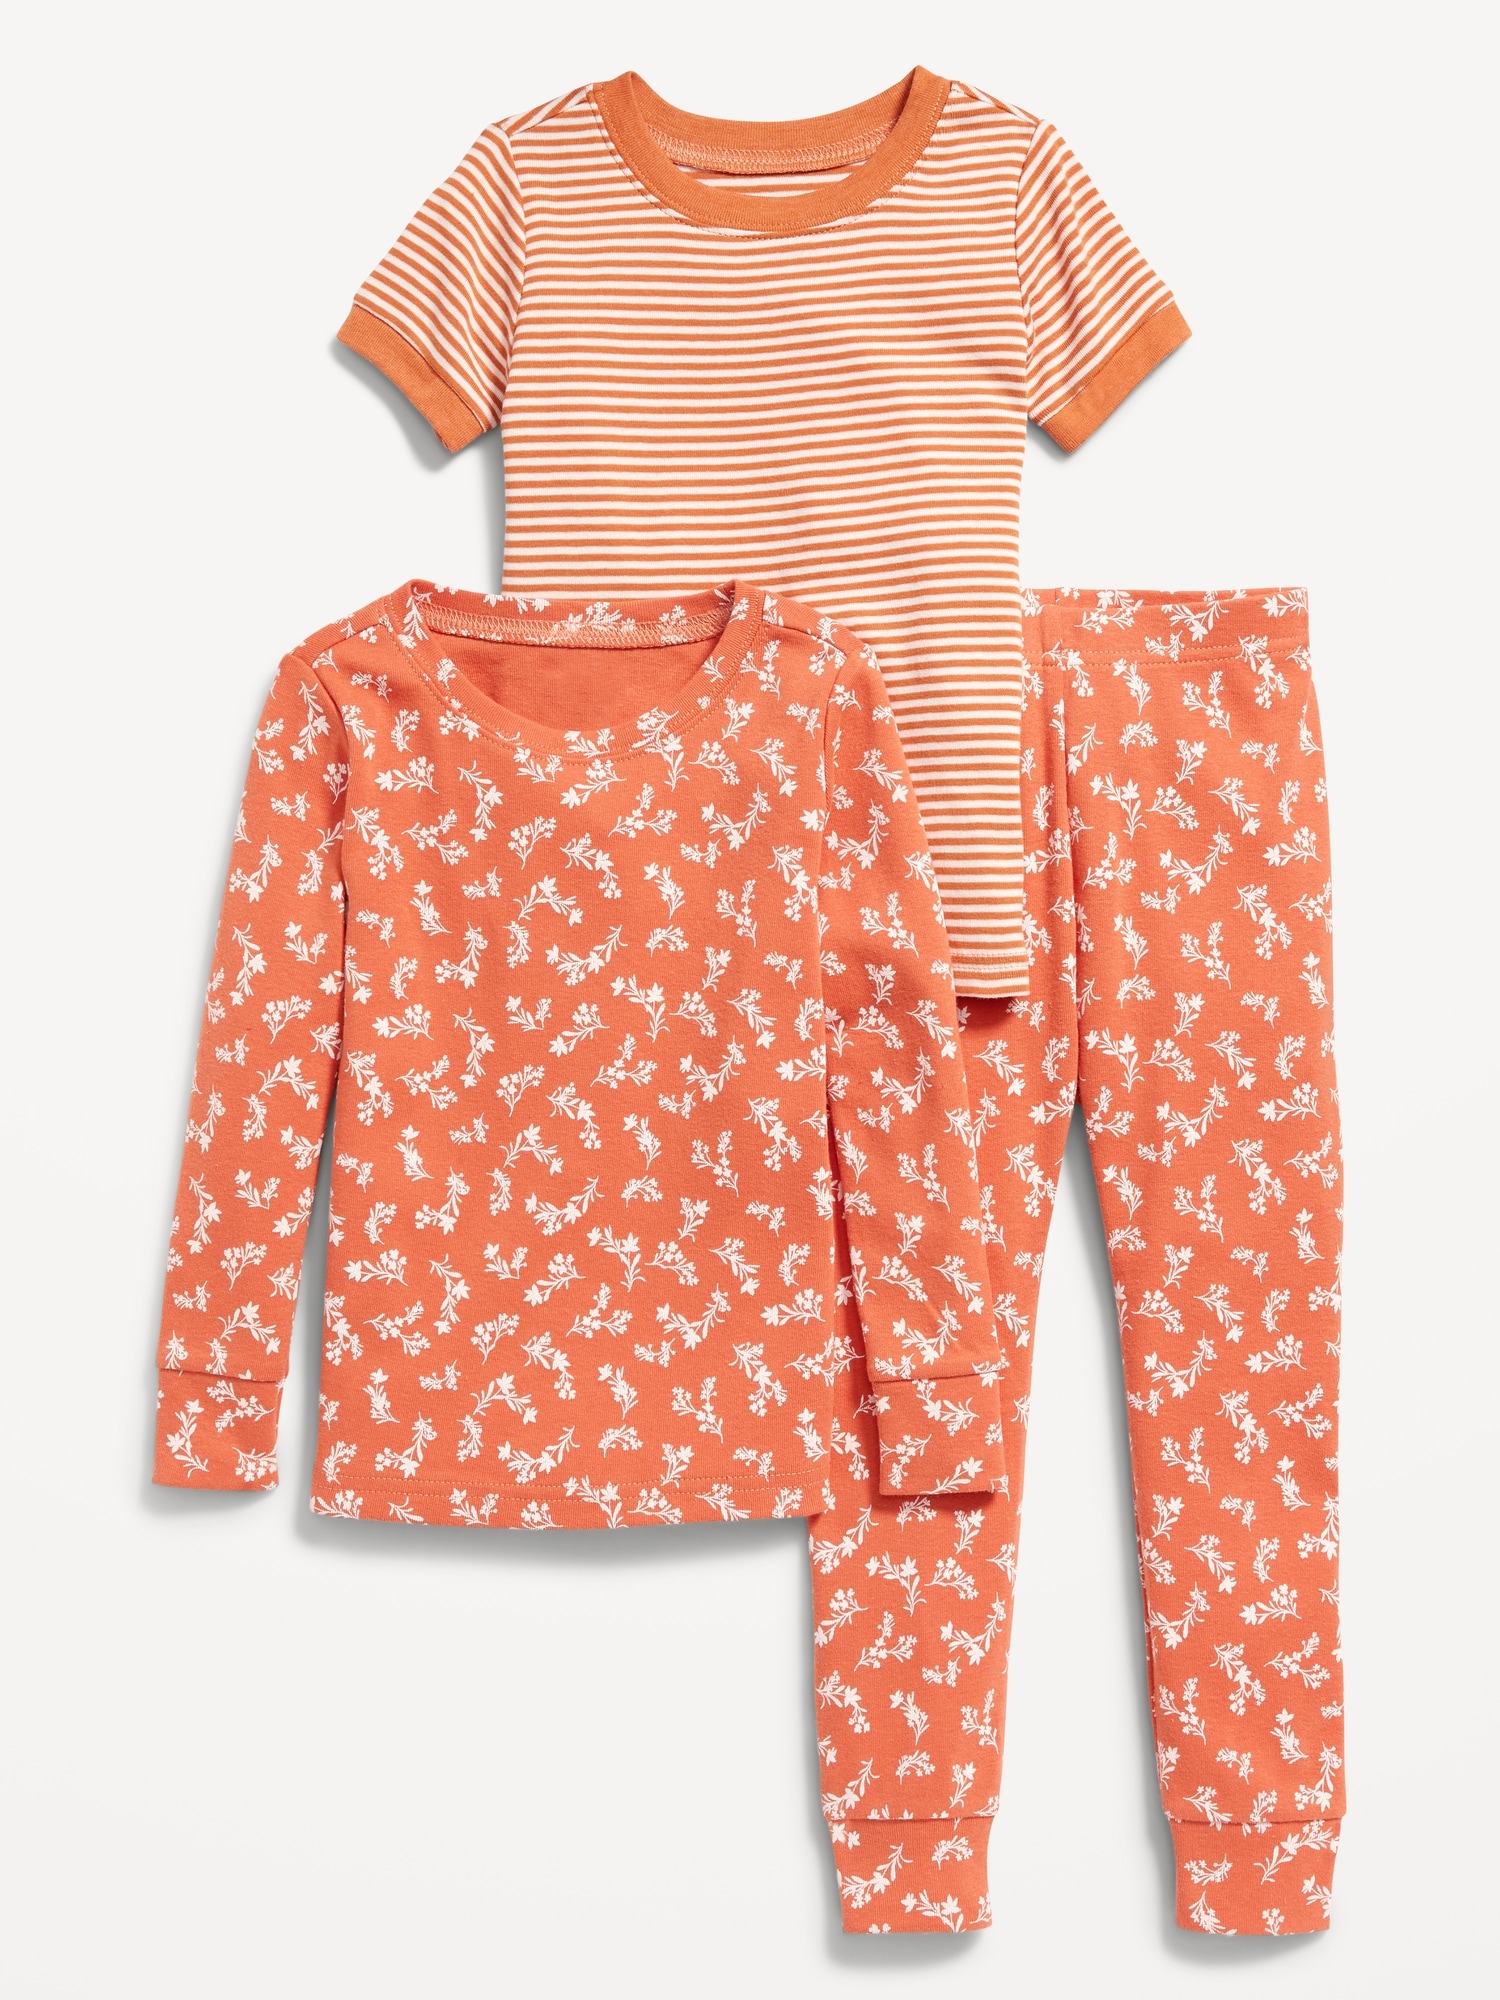 Oldnavy Unisex Snug-Fit 3-Piece Pajama Set for Toddler & Baby Hot Deal